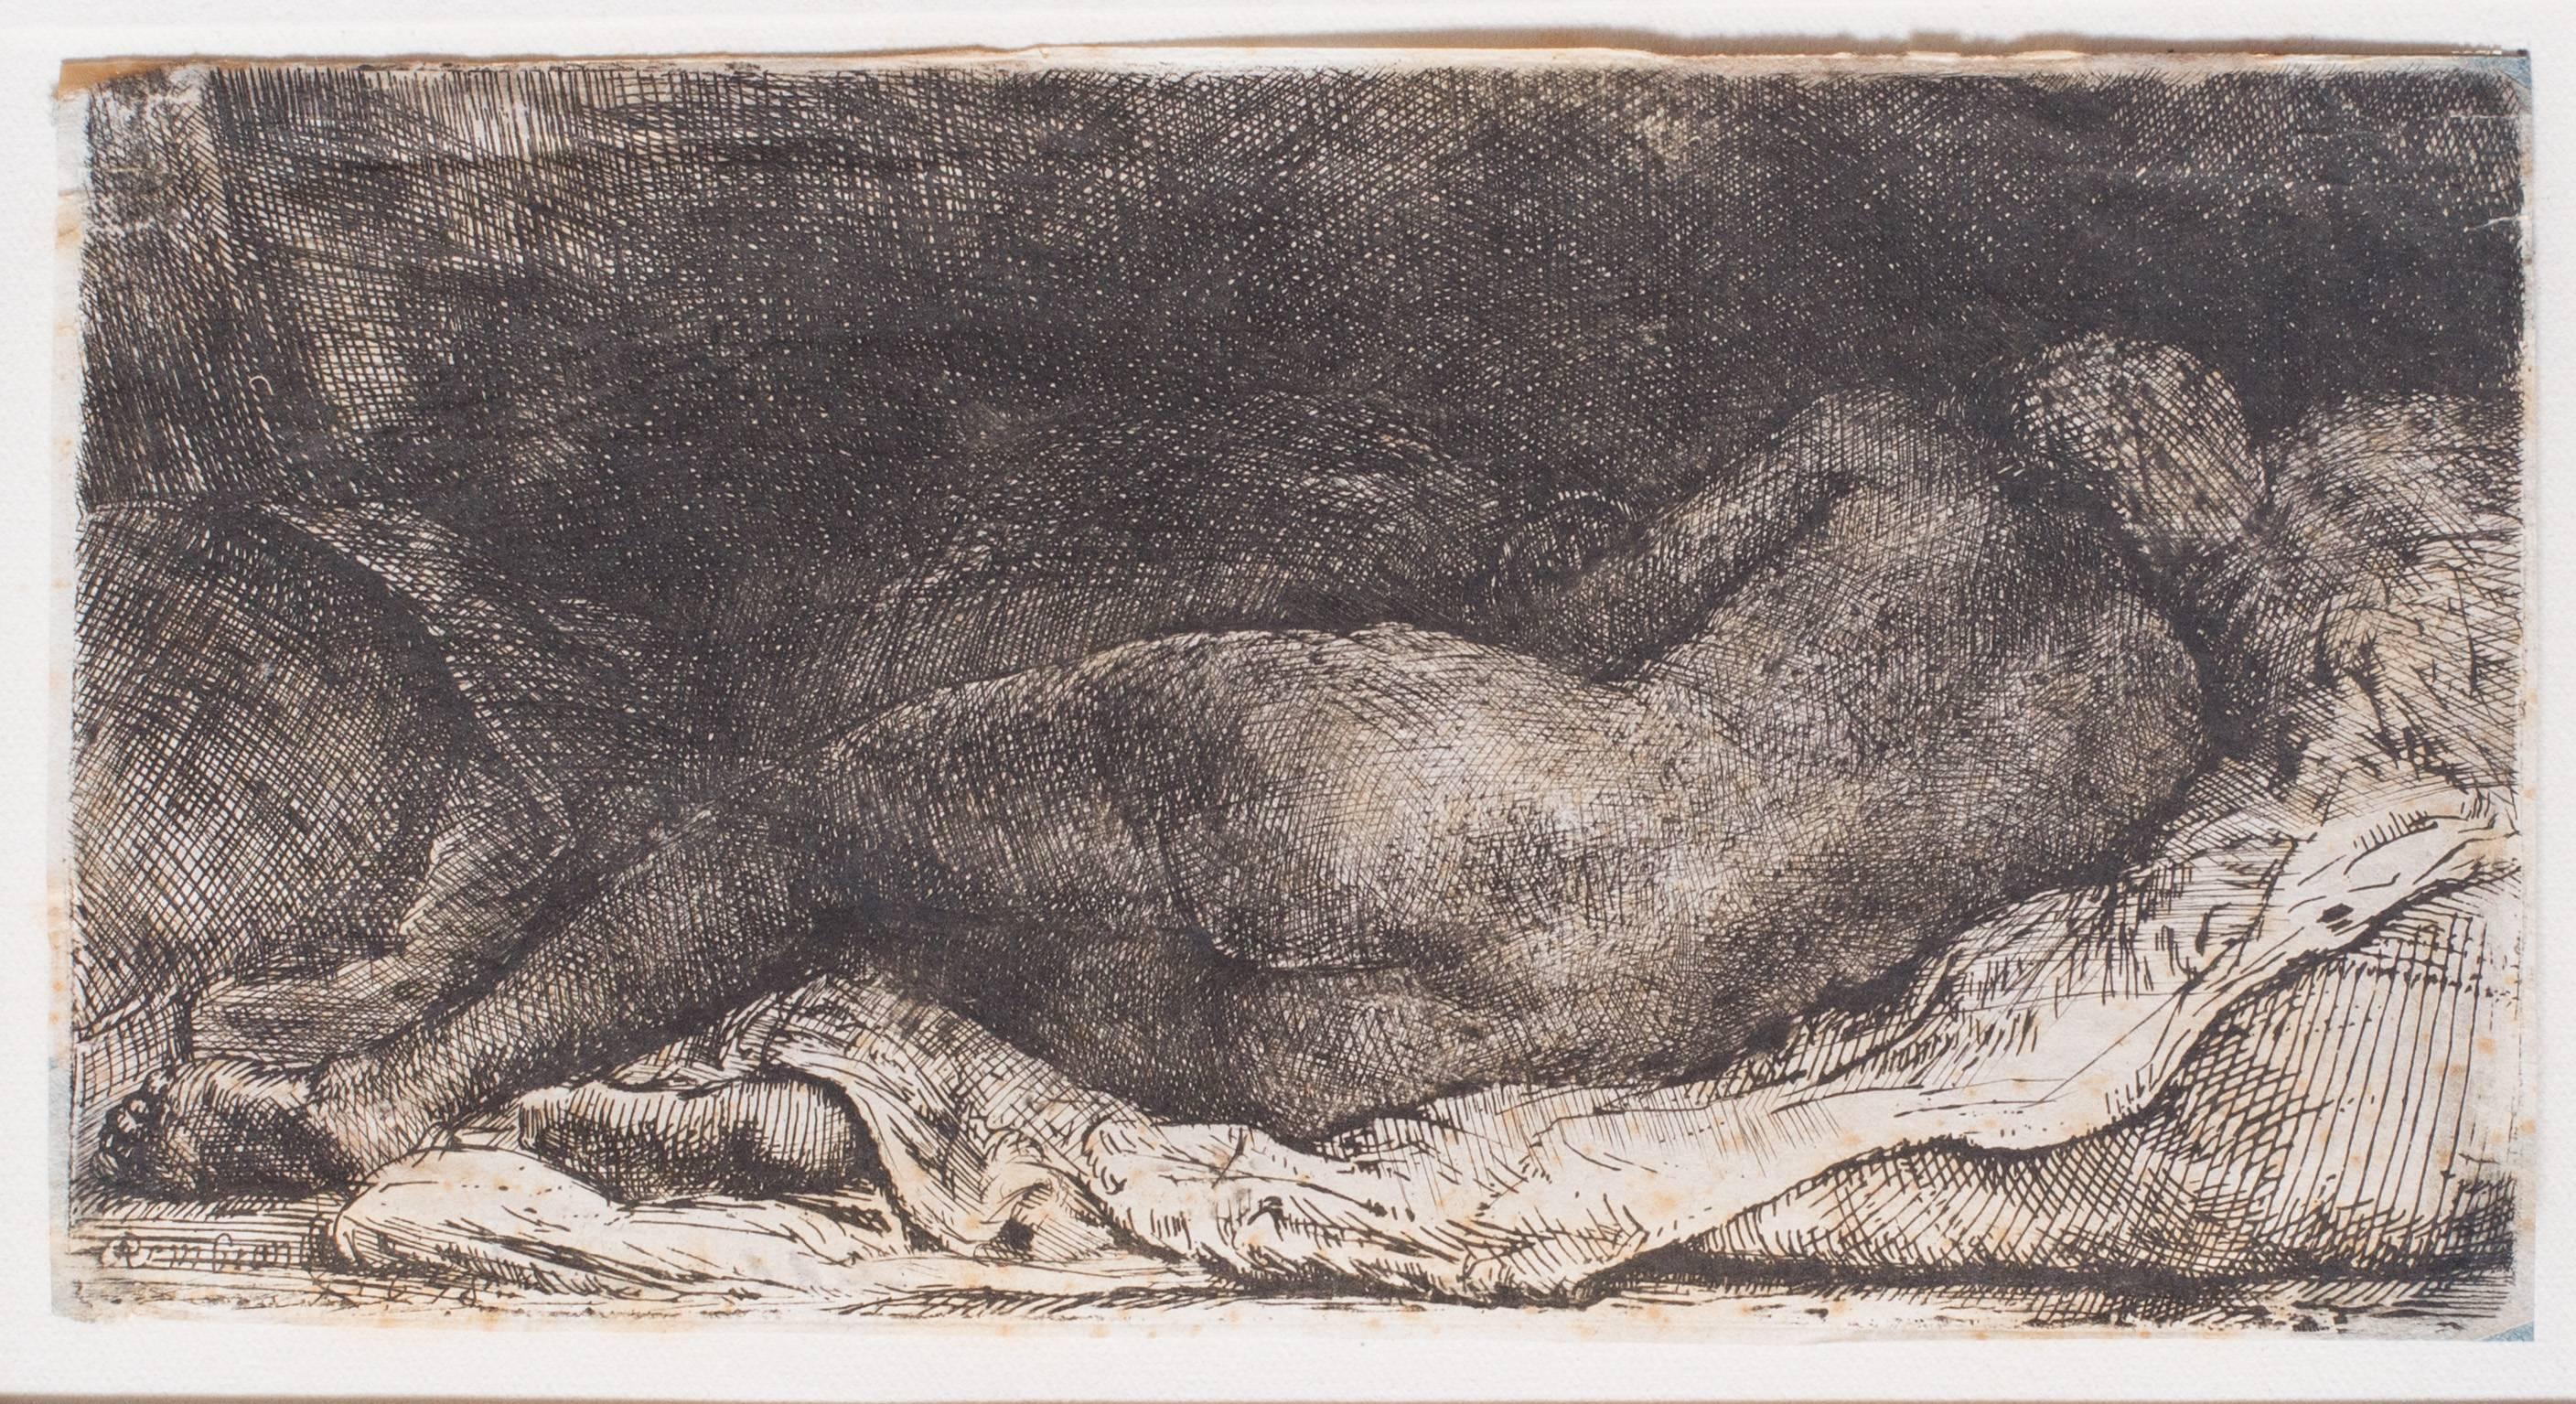 Negress reclining - Print by Rembrandt van Rijn